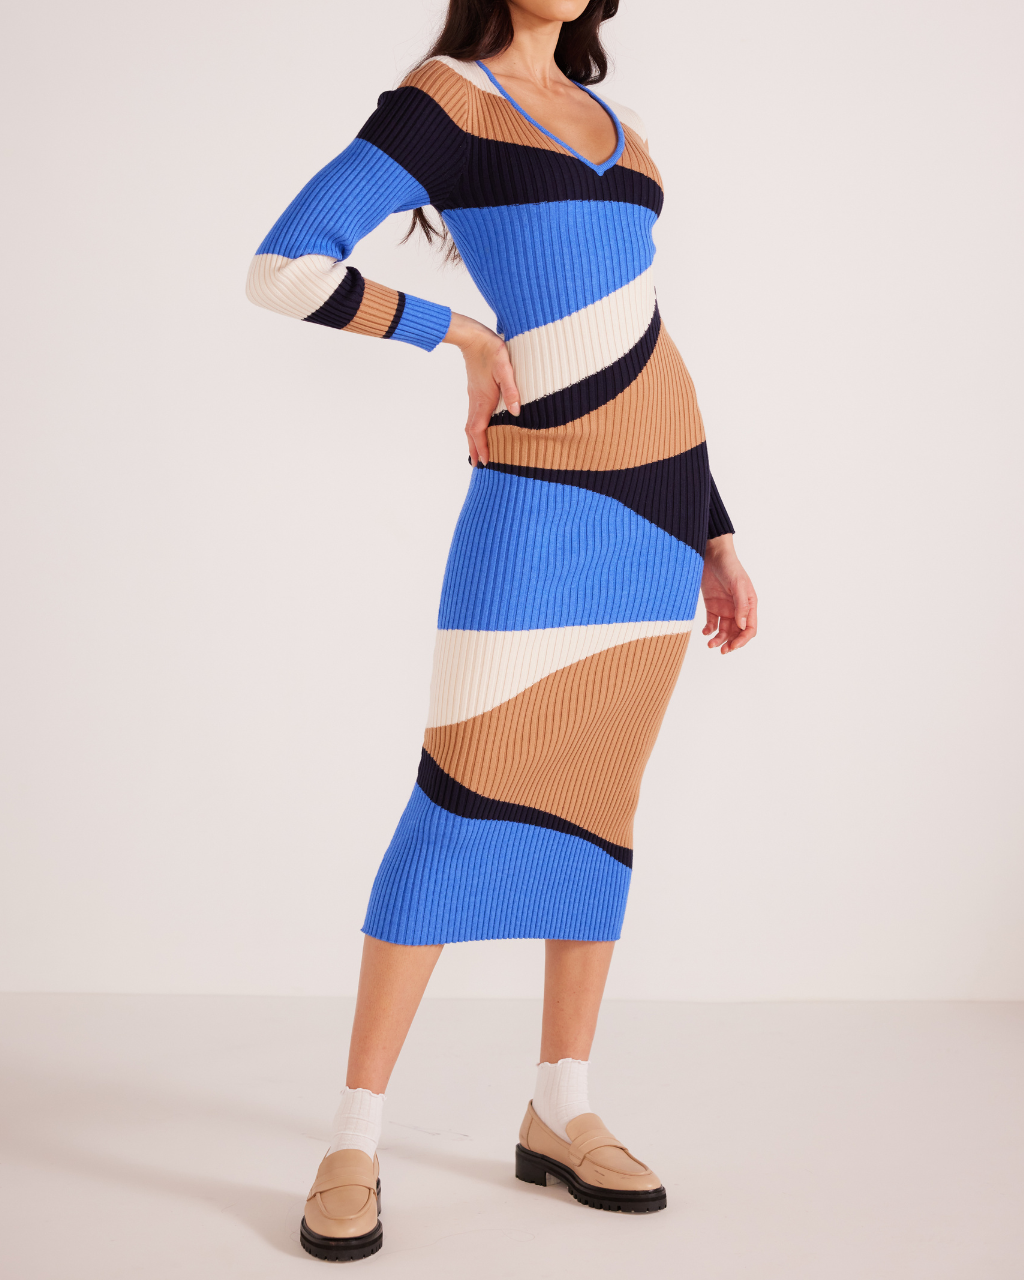 Edras Intarsia Knit Midi Dress Brown Blue Multi, Midi Dress by MinkPink | LIT Boutique